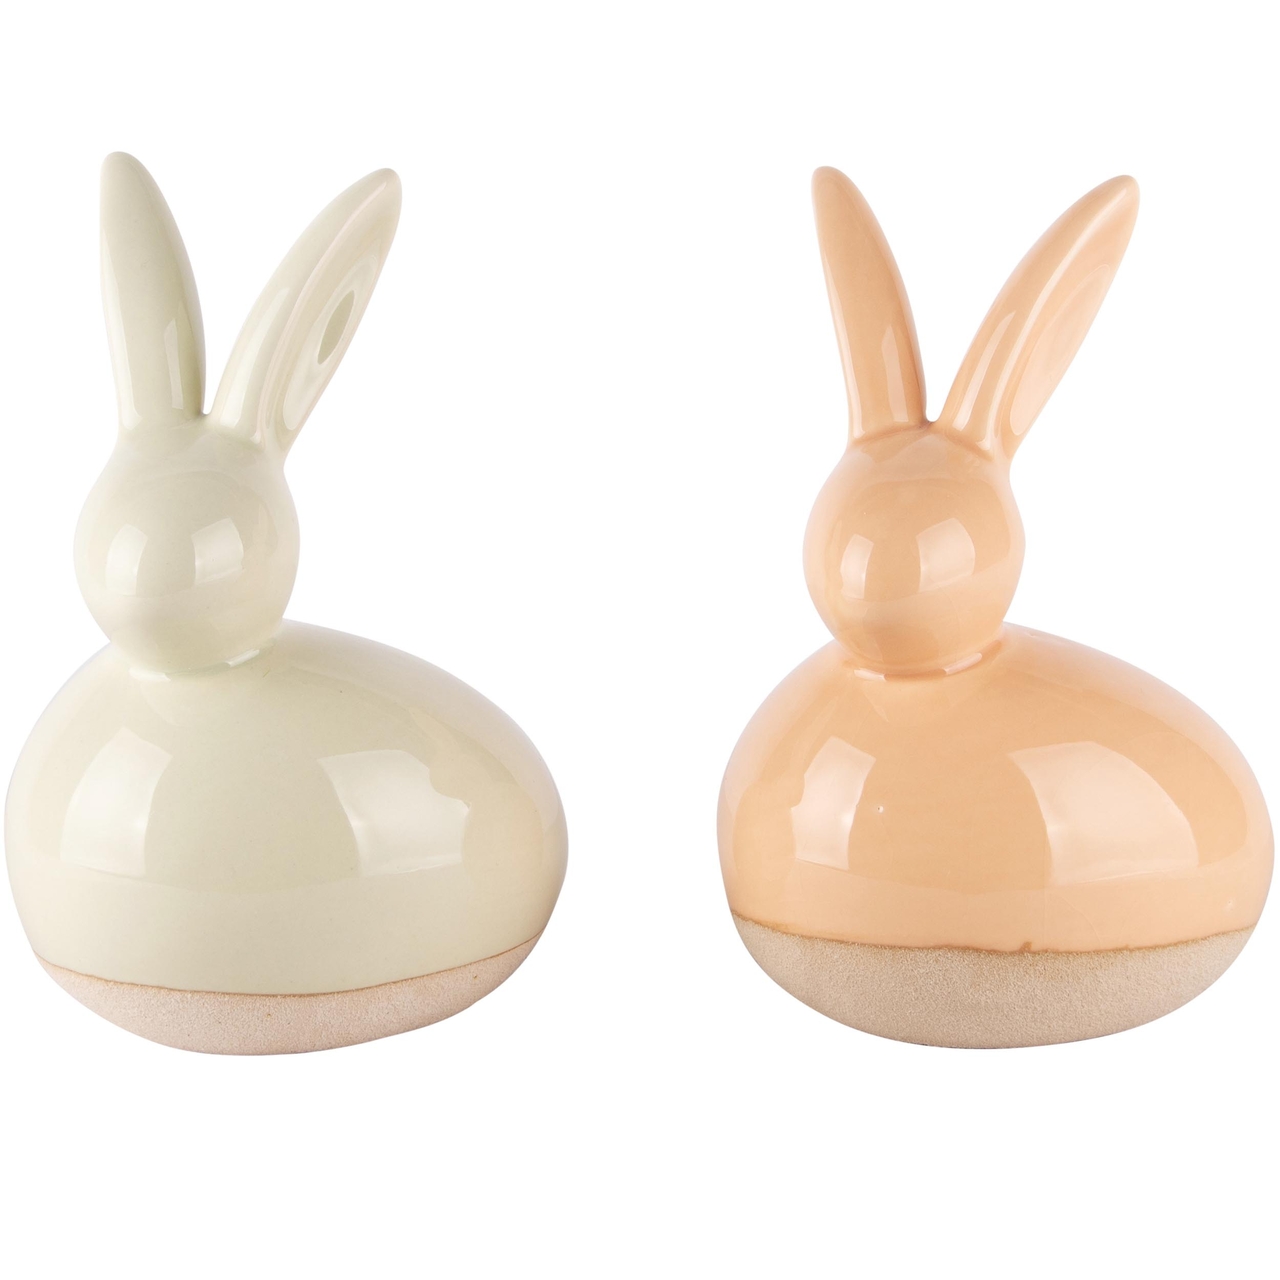 Dekoratief | Bunny groen/peach, porselein, 10x8x15cm, set van 2 stuks | A240020